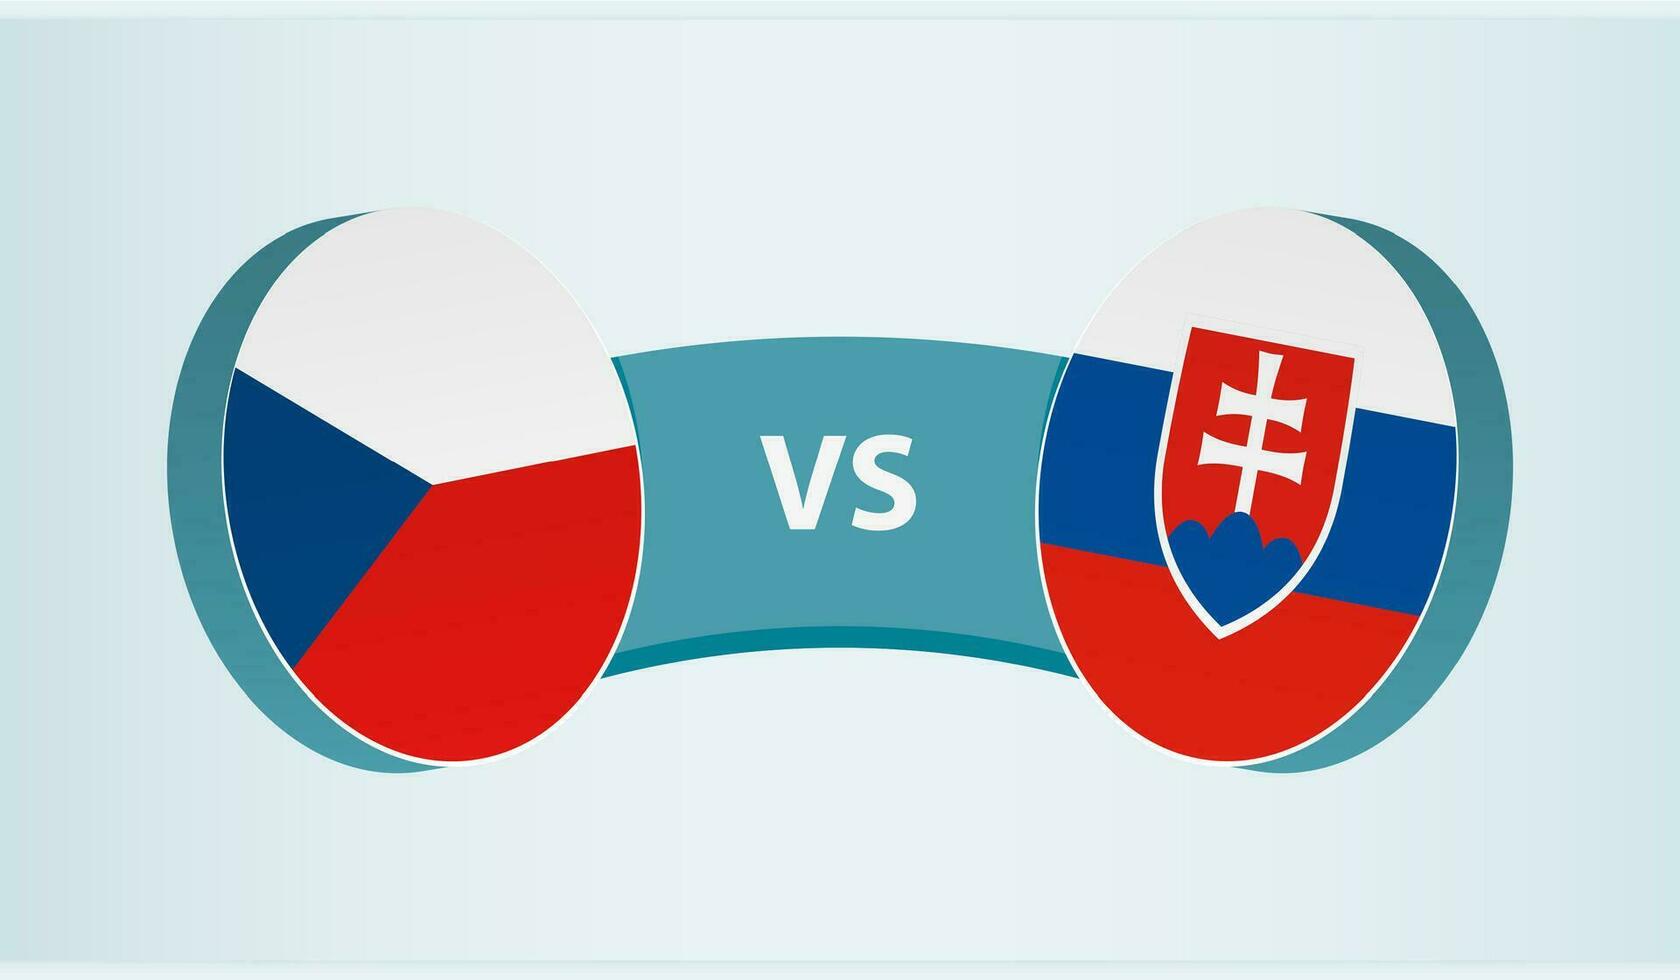 tcheco república versus Eslováquia, equipe Esportes concorrência conceito. vetor